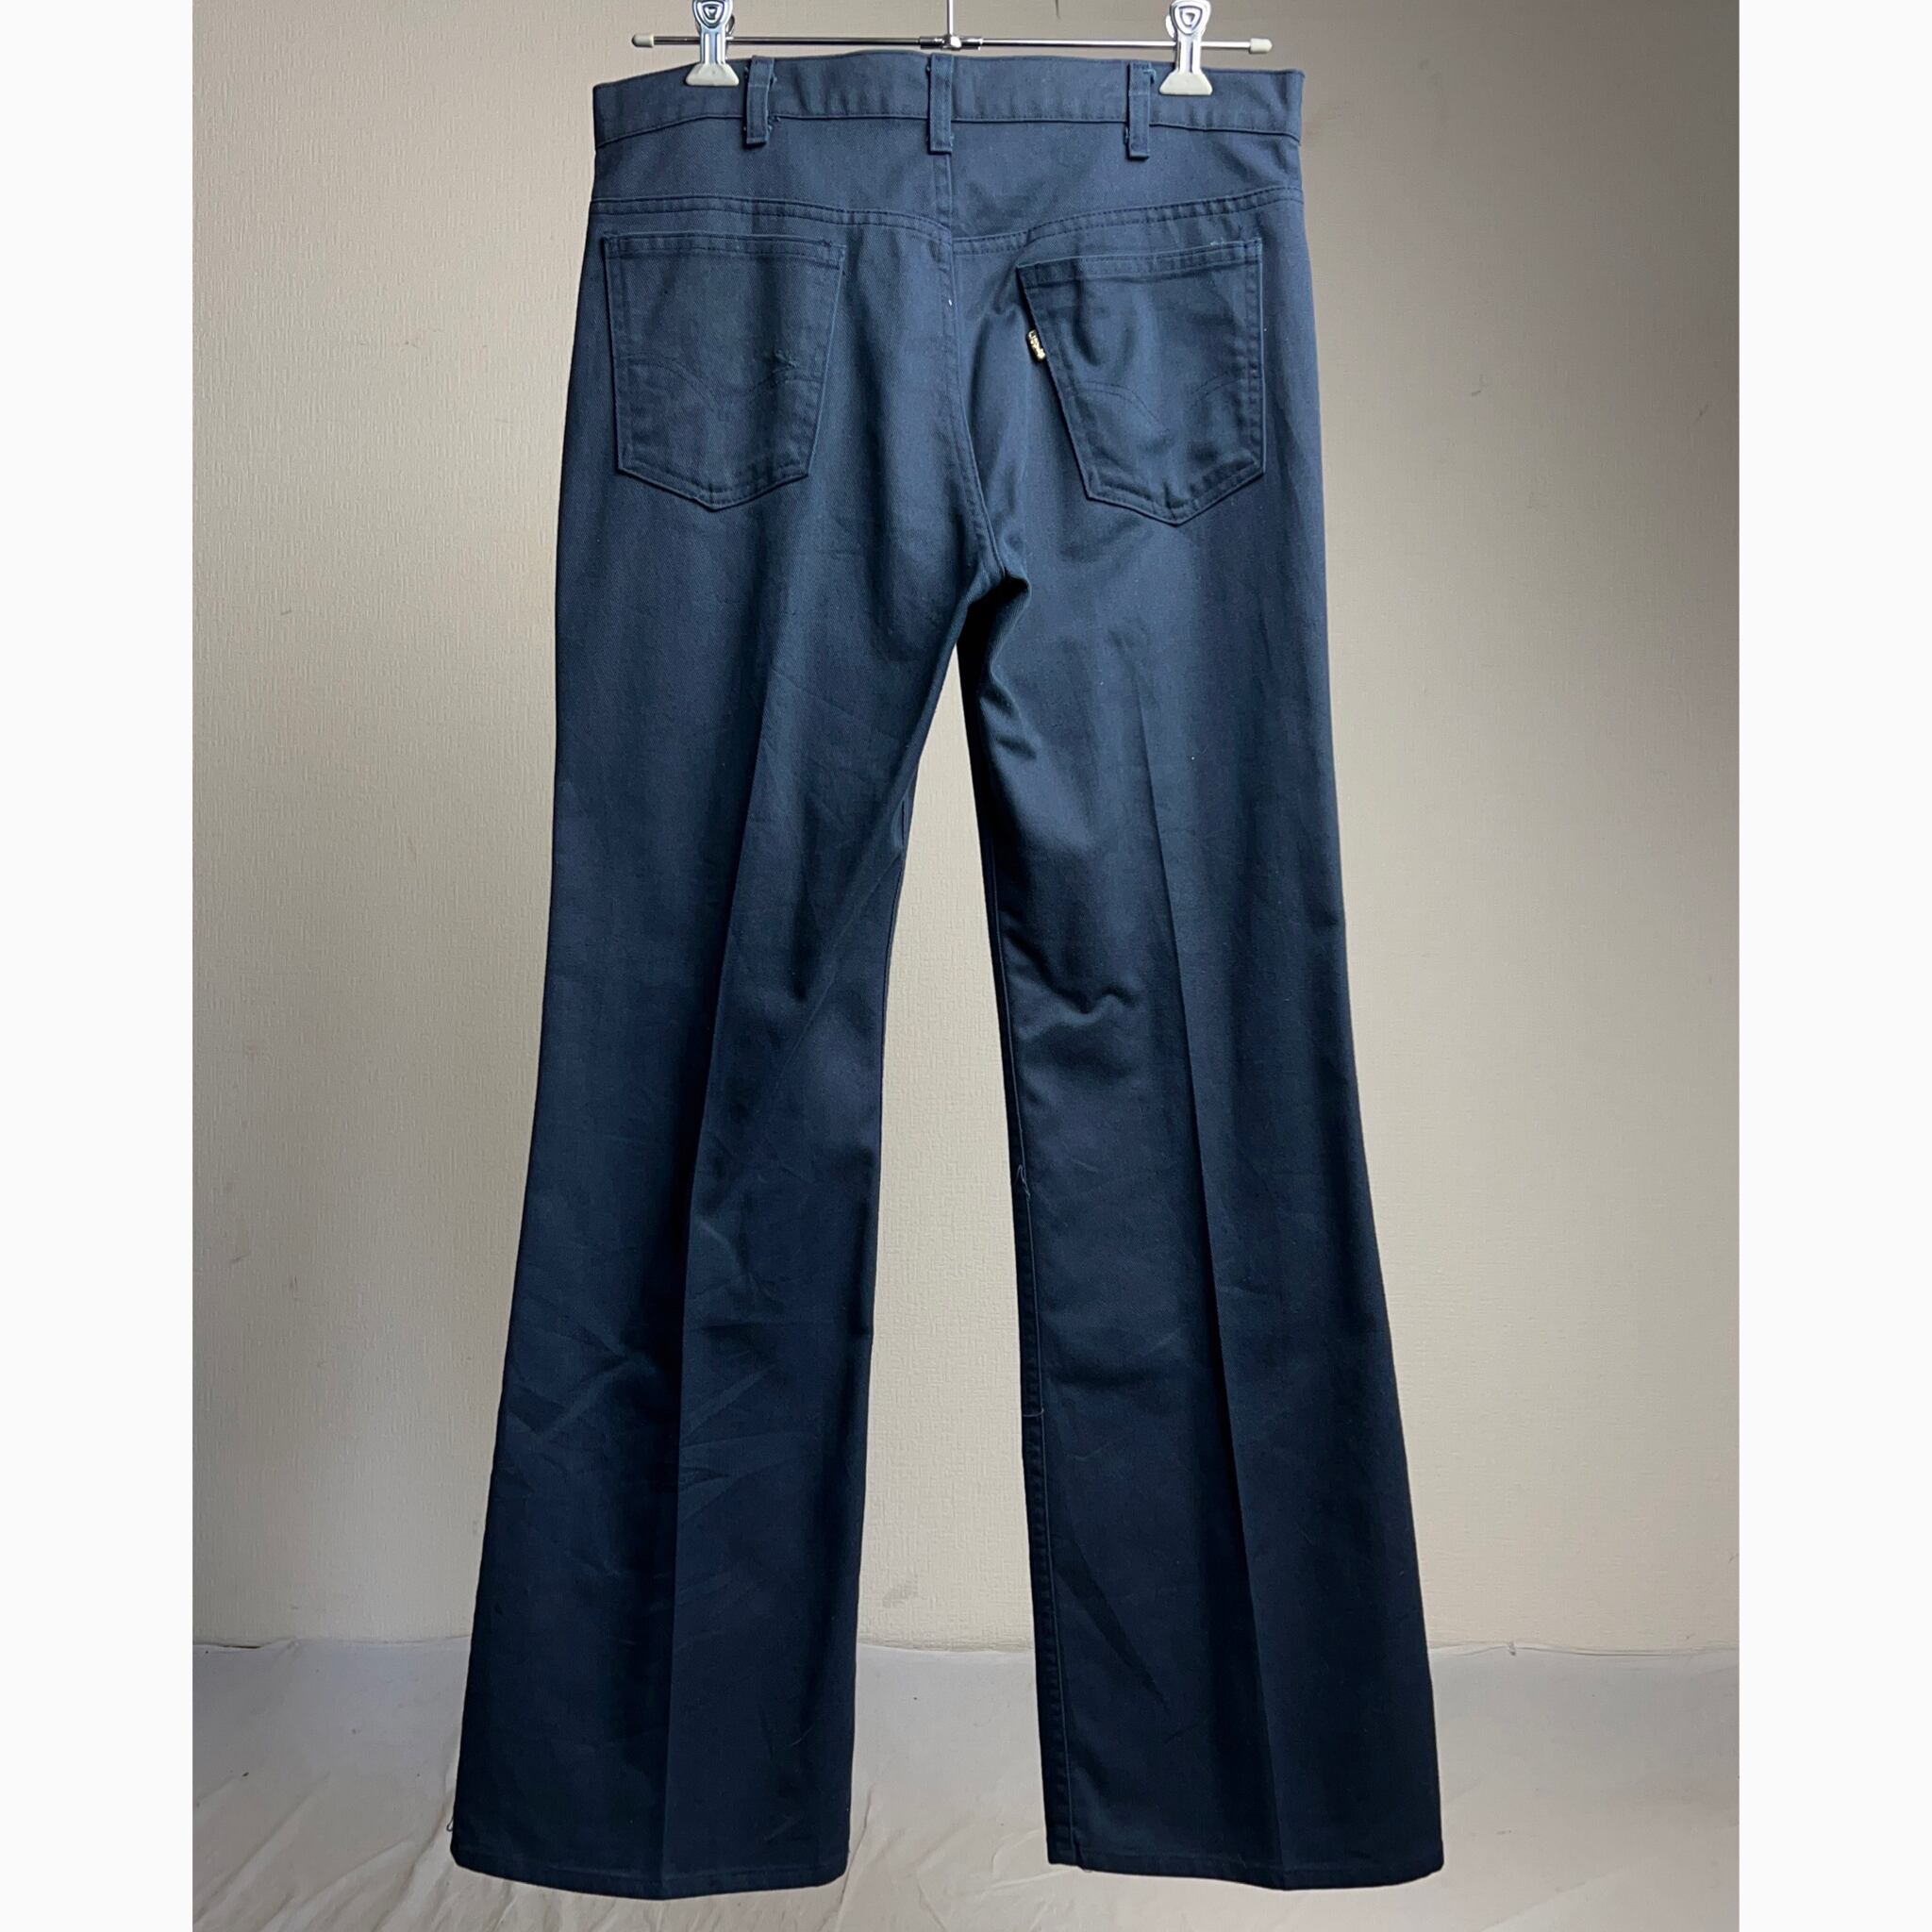 Levi's 517 STAPREST Pants NV 1981s 36/31